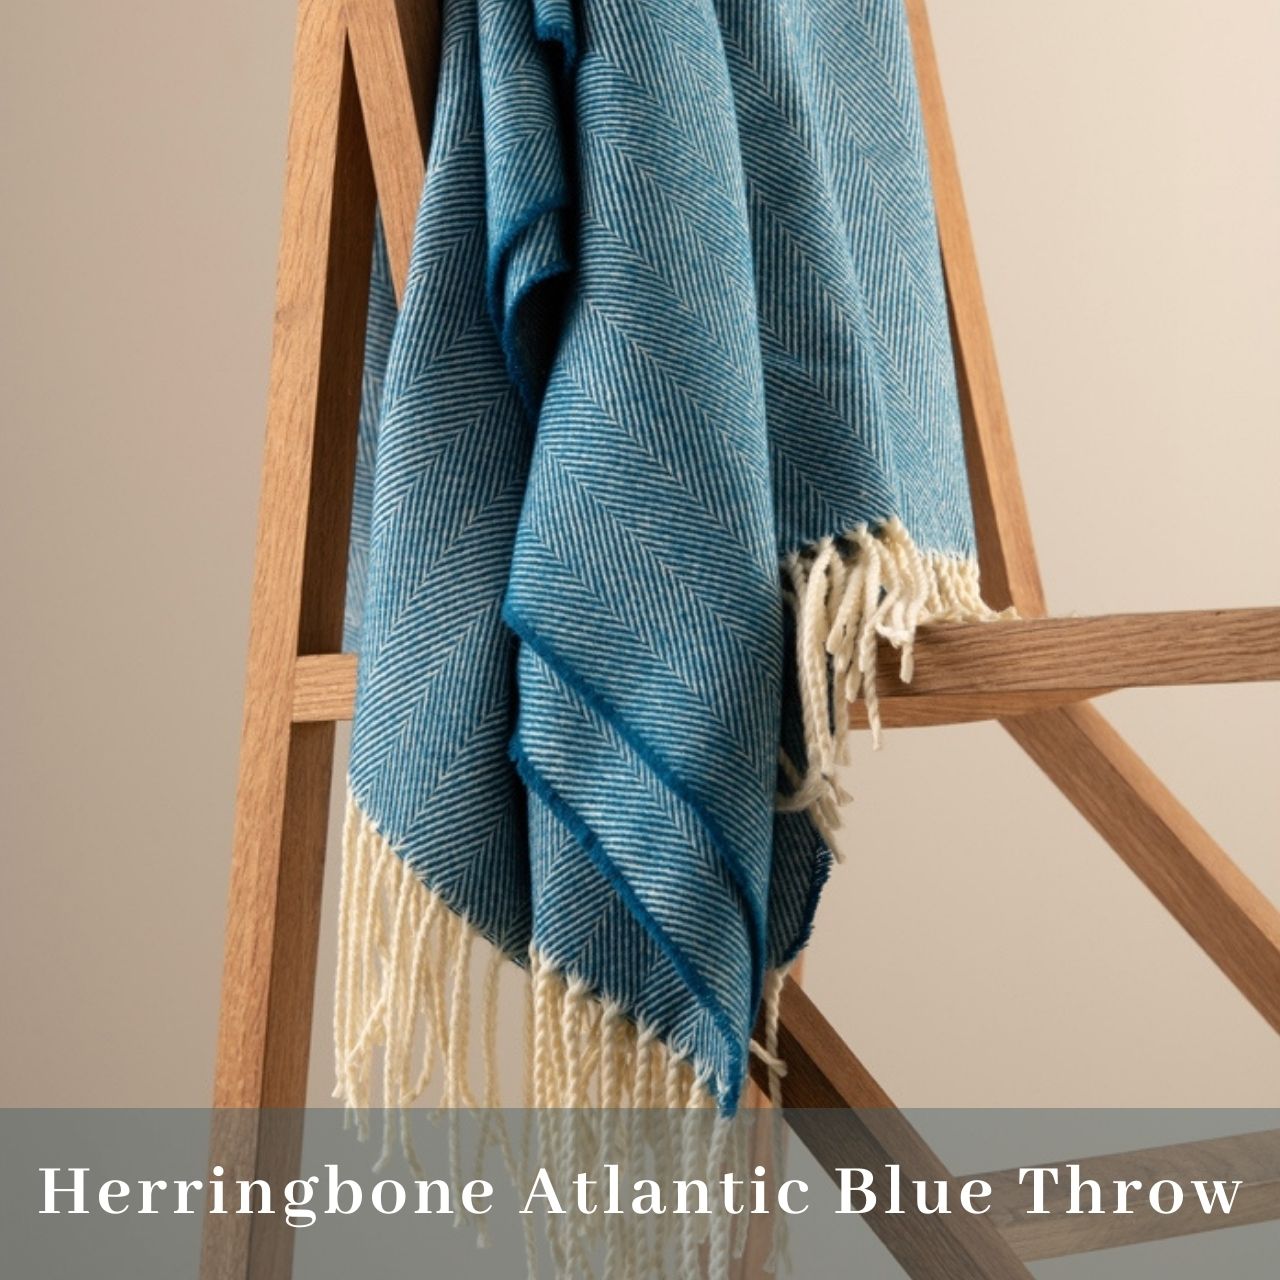 Galway Crystal Herringbone Throw - Atlantic Blue